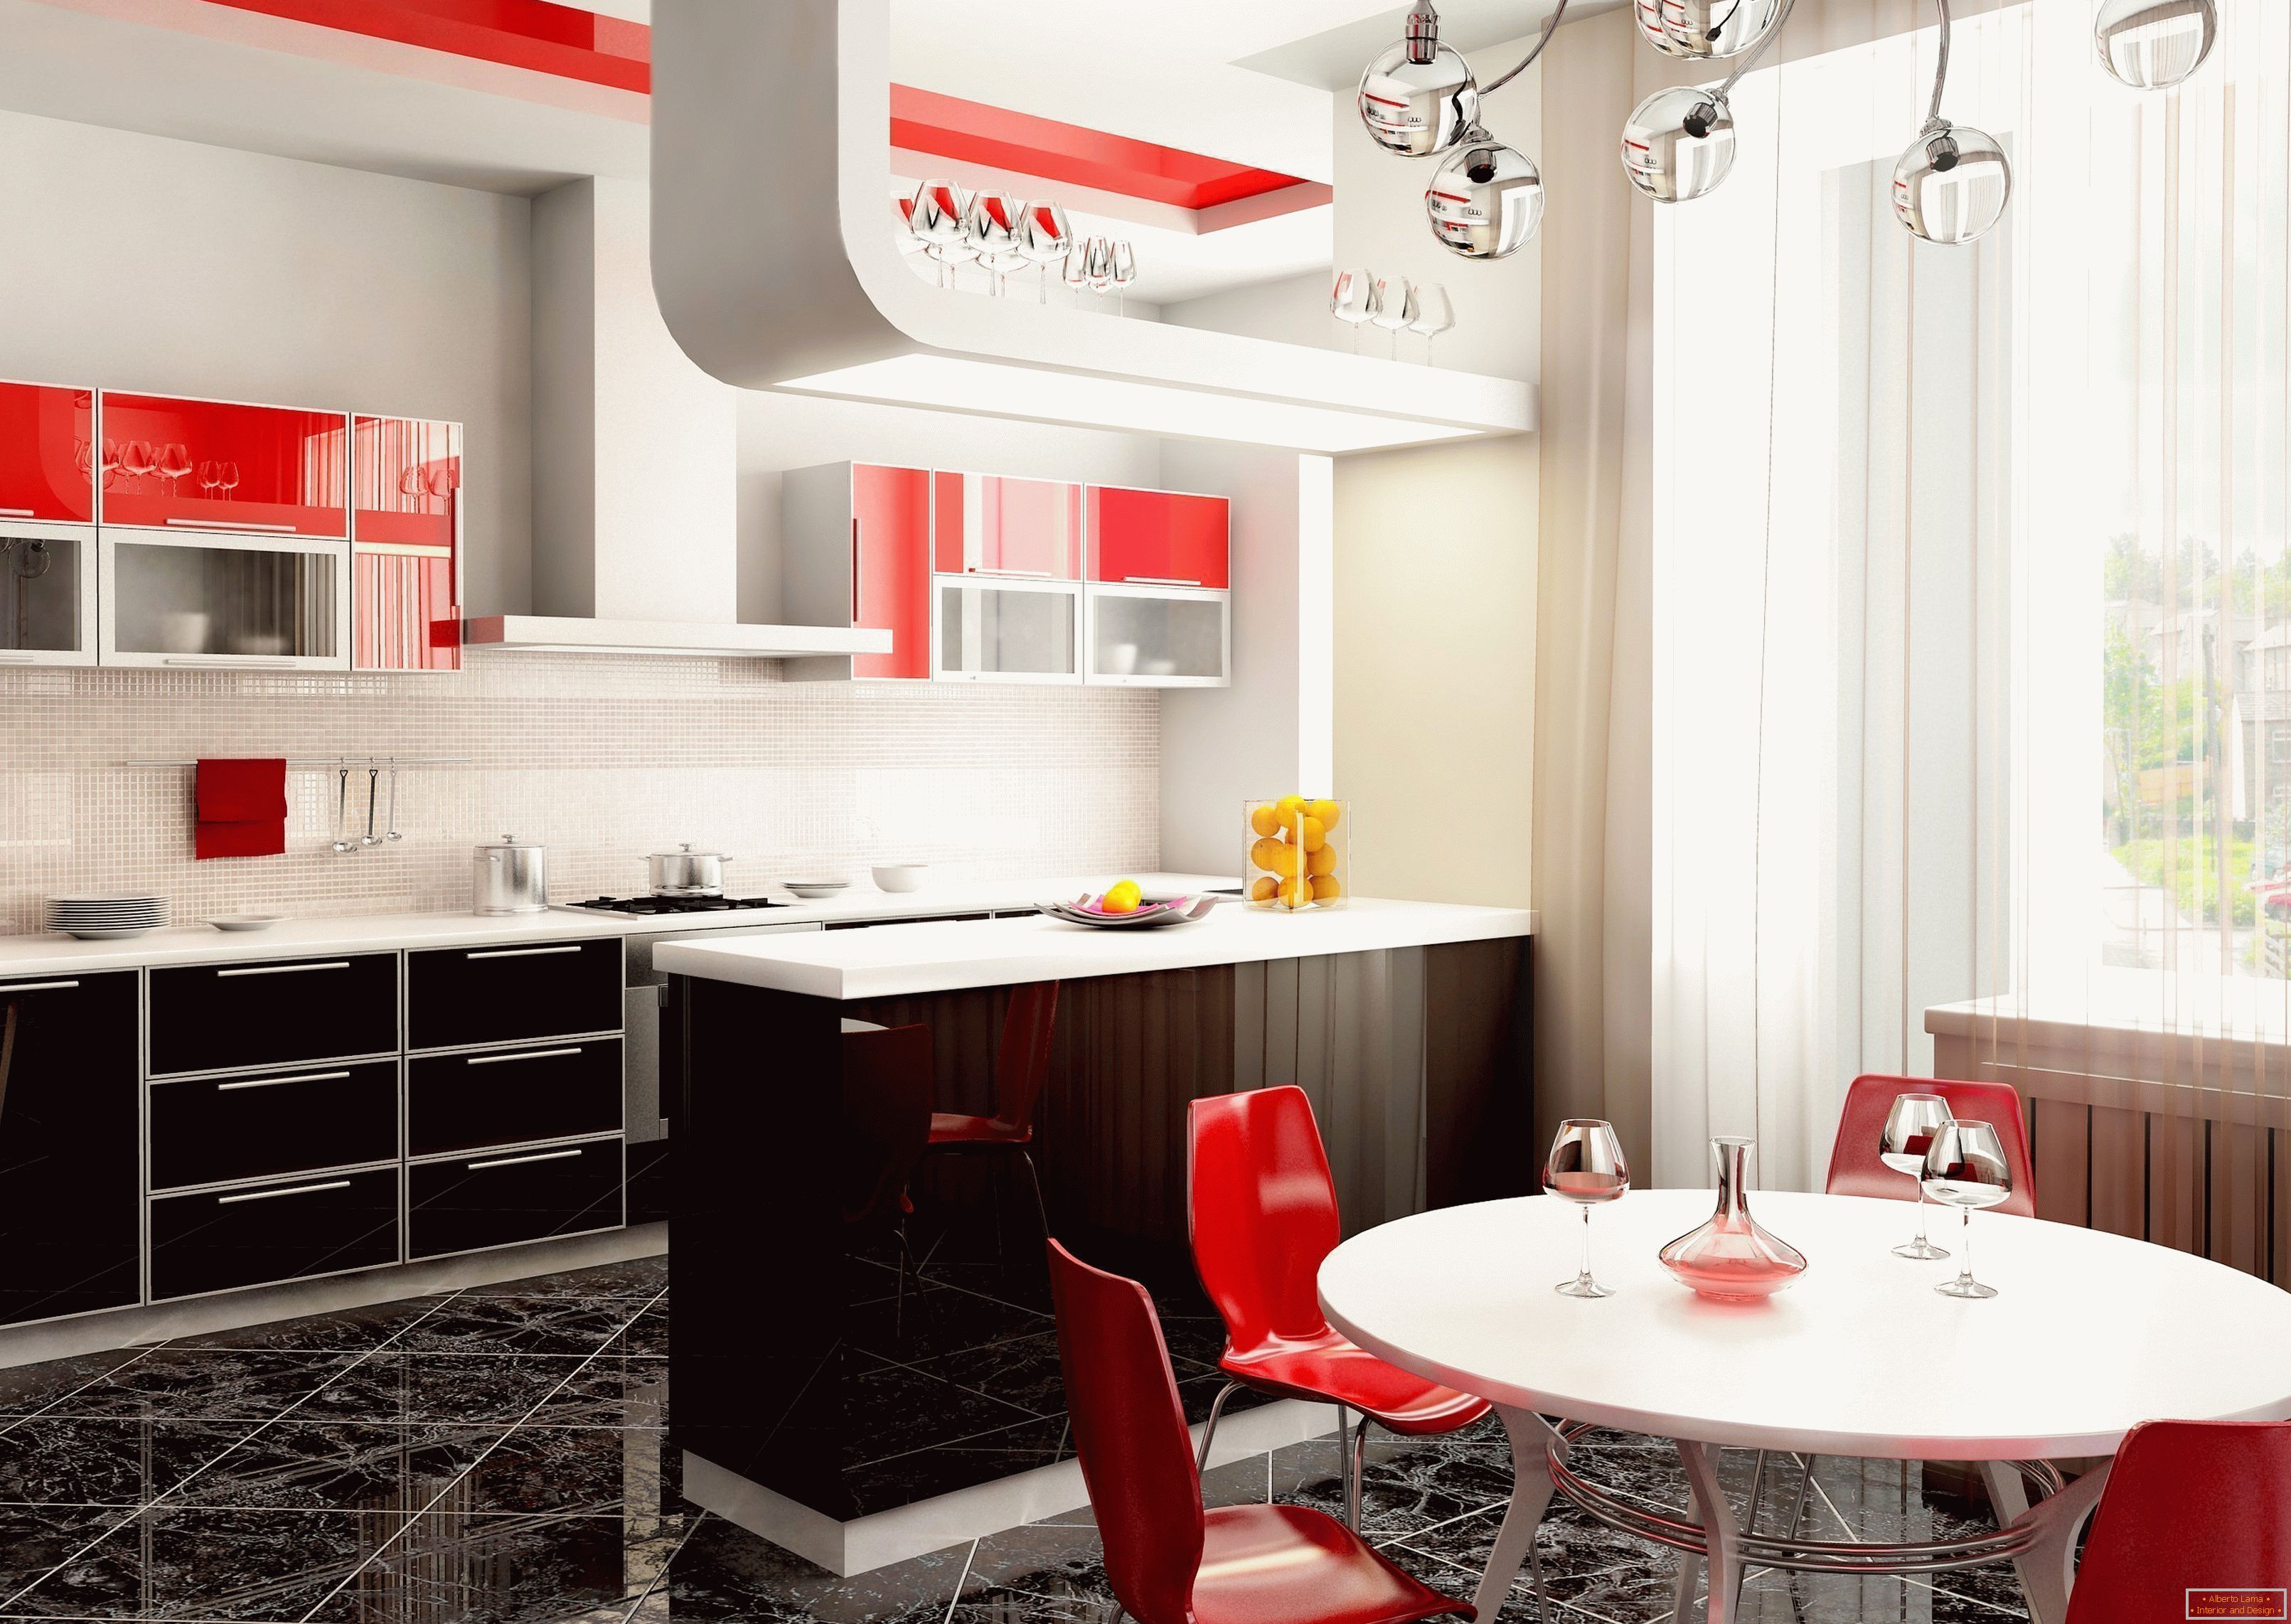 Interior brilhante da cozinha no apartamento com detalhes em vermelho